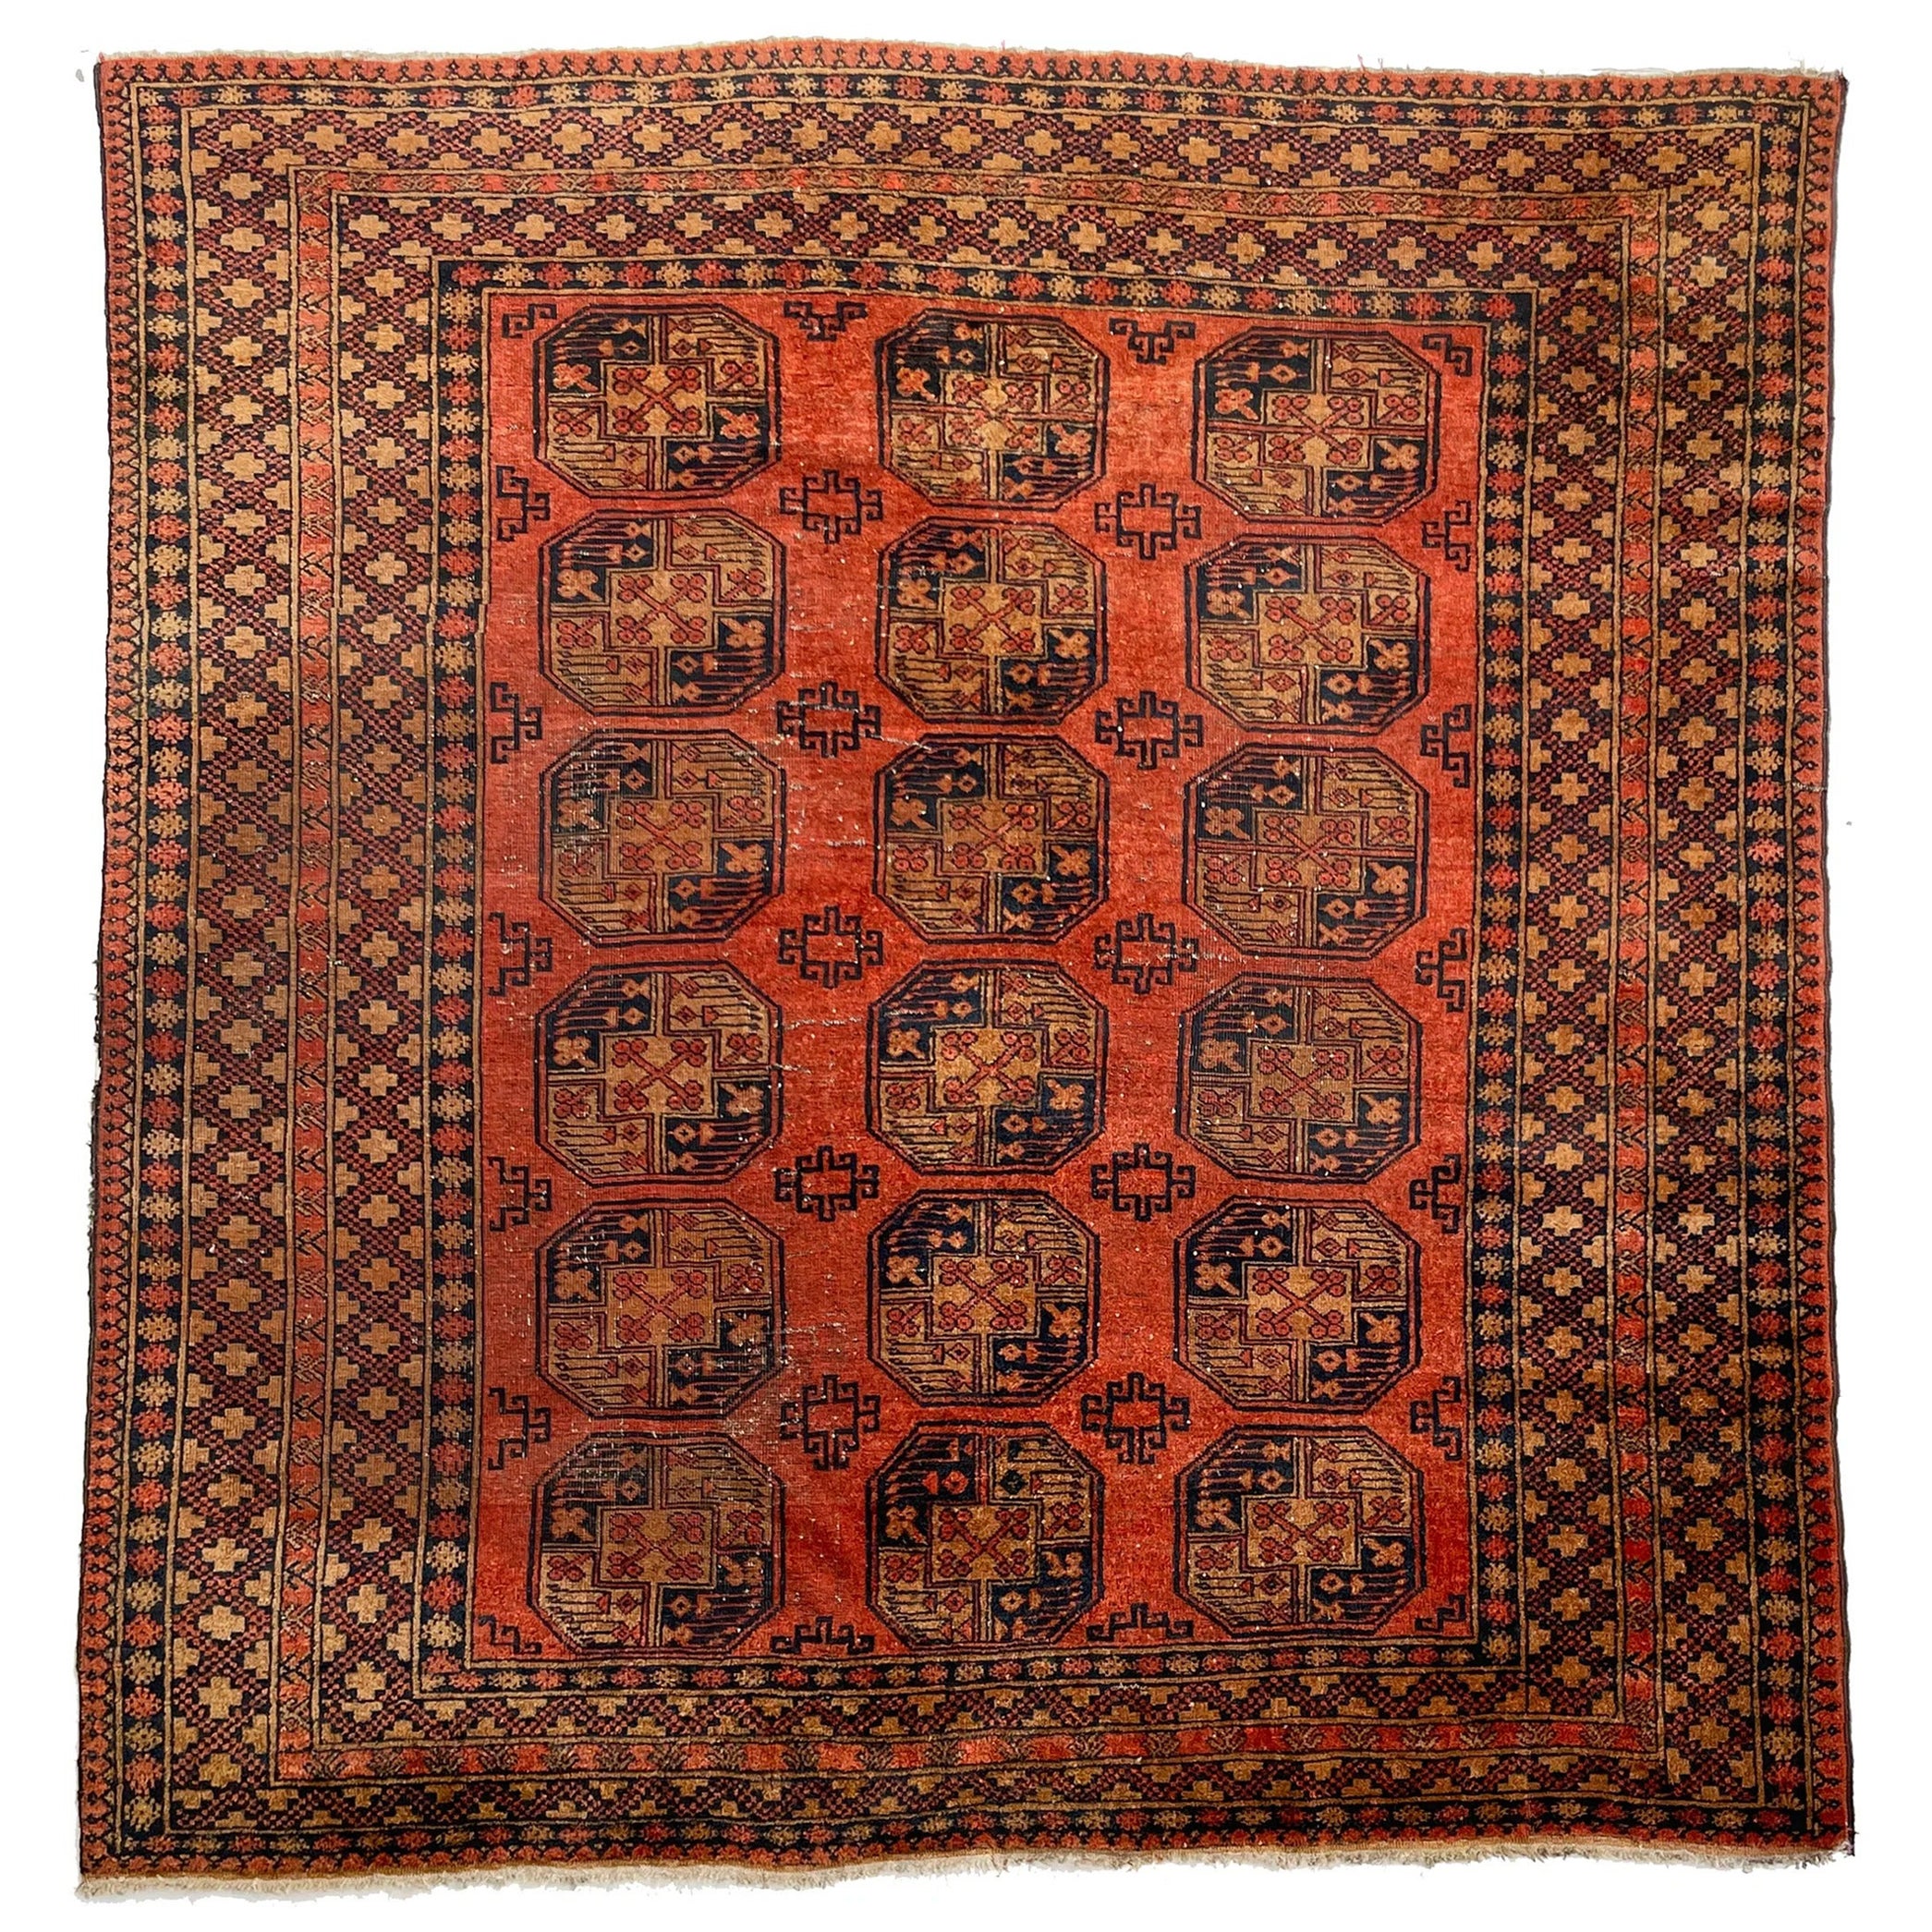 Tapis de laine Antiquities unique de forme carrée